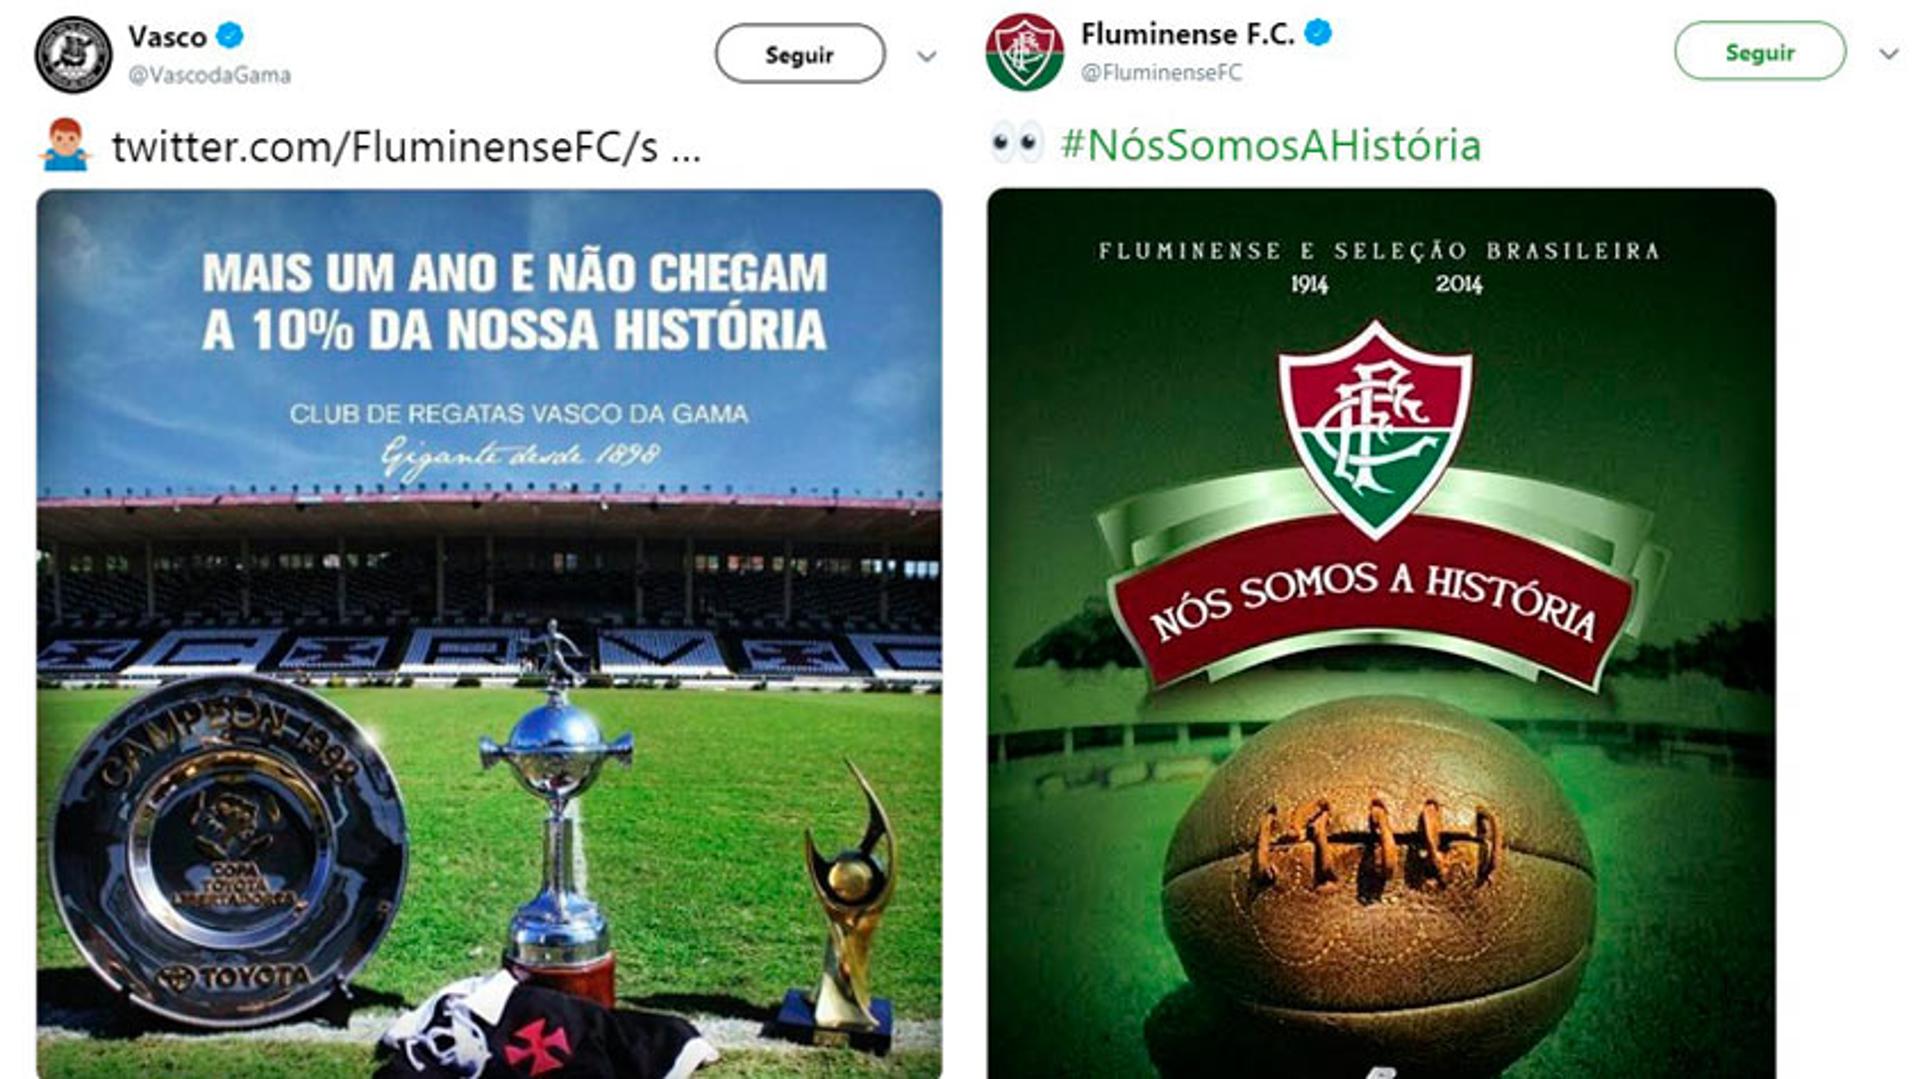 Montagem - Vasco e Fluminense